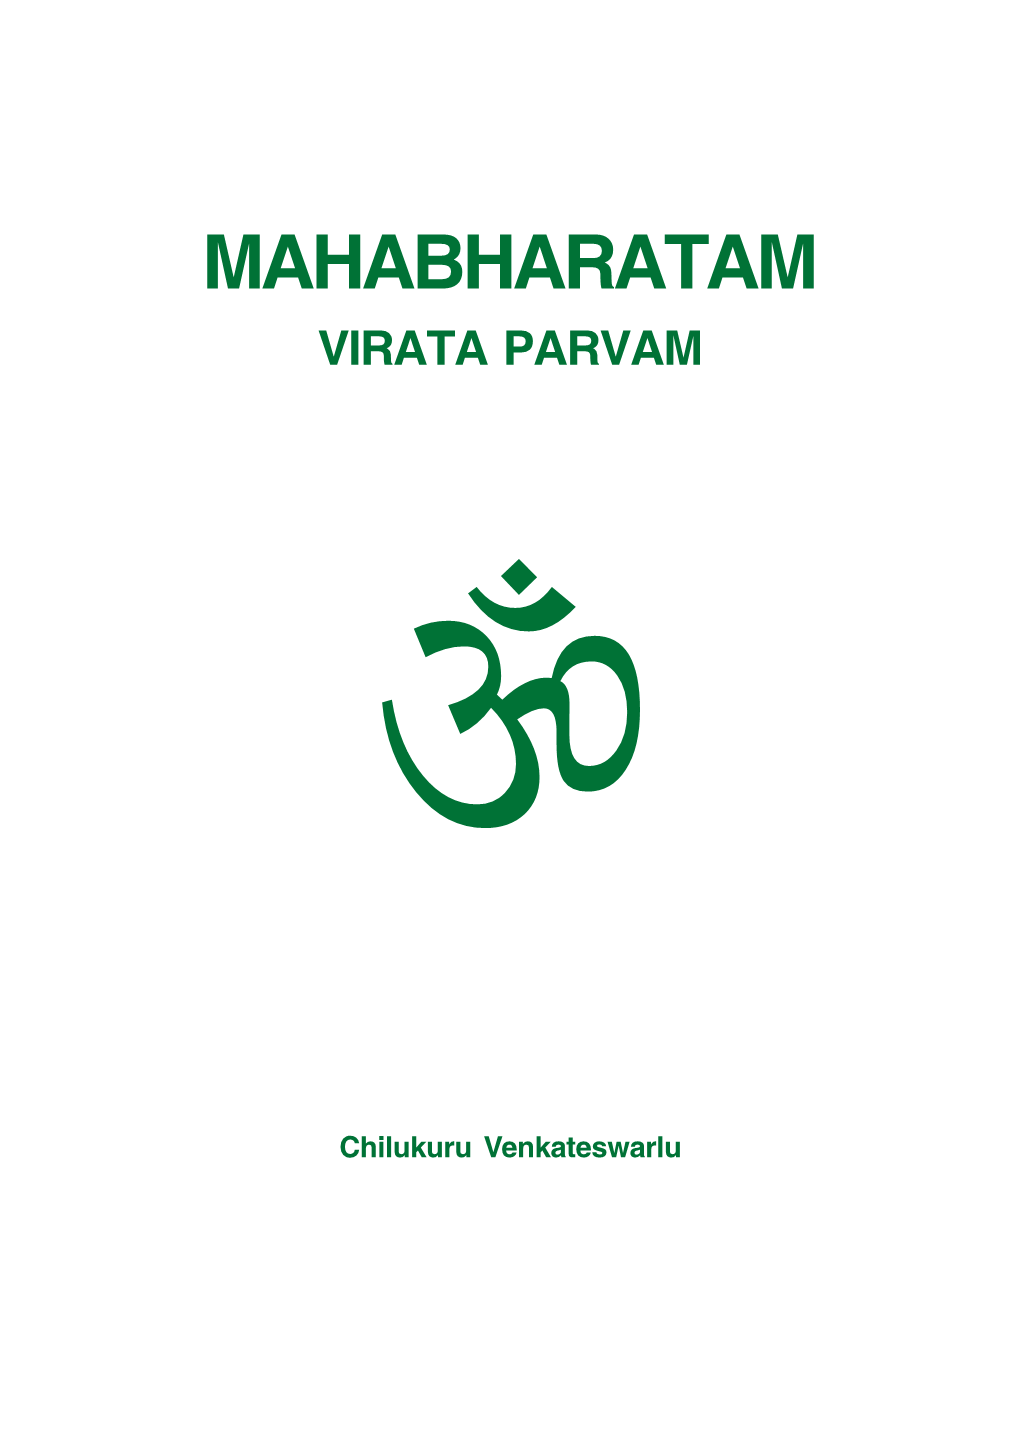 Mahabharatam Virata Parvam 